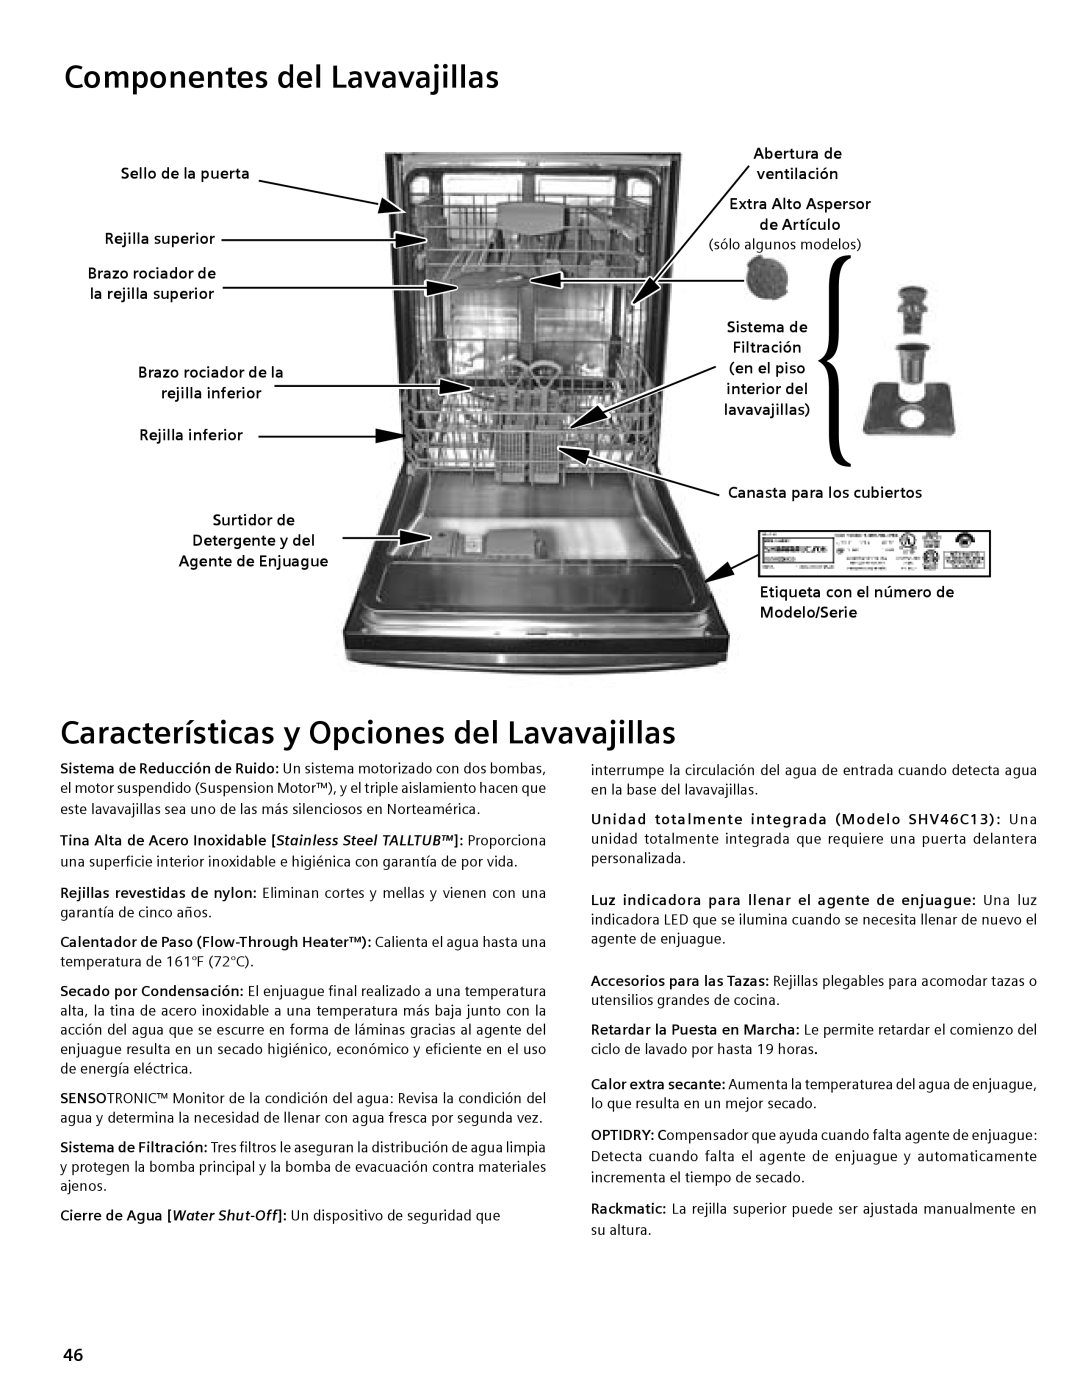 Compaq SHE55C manual Componentes del Lavavajillas, Características y Opciones del Lavavajillas 